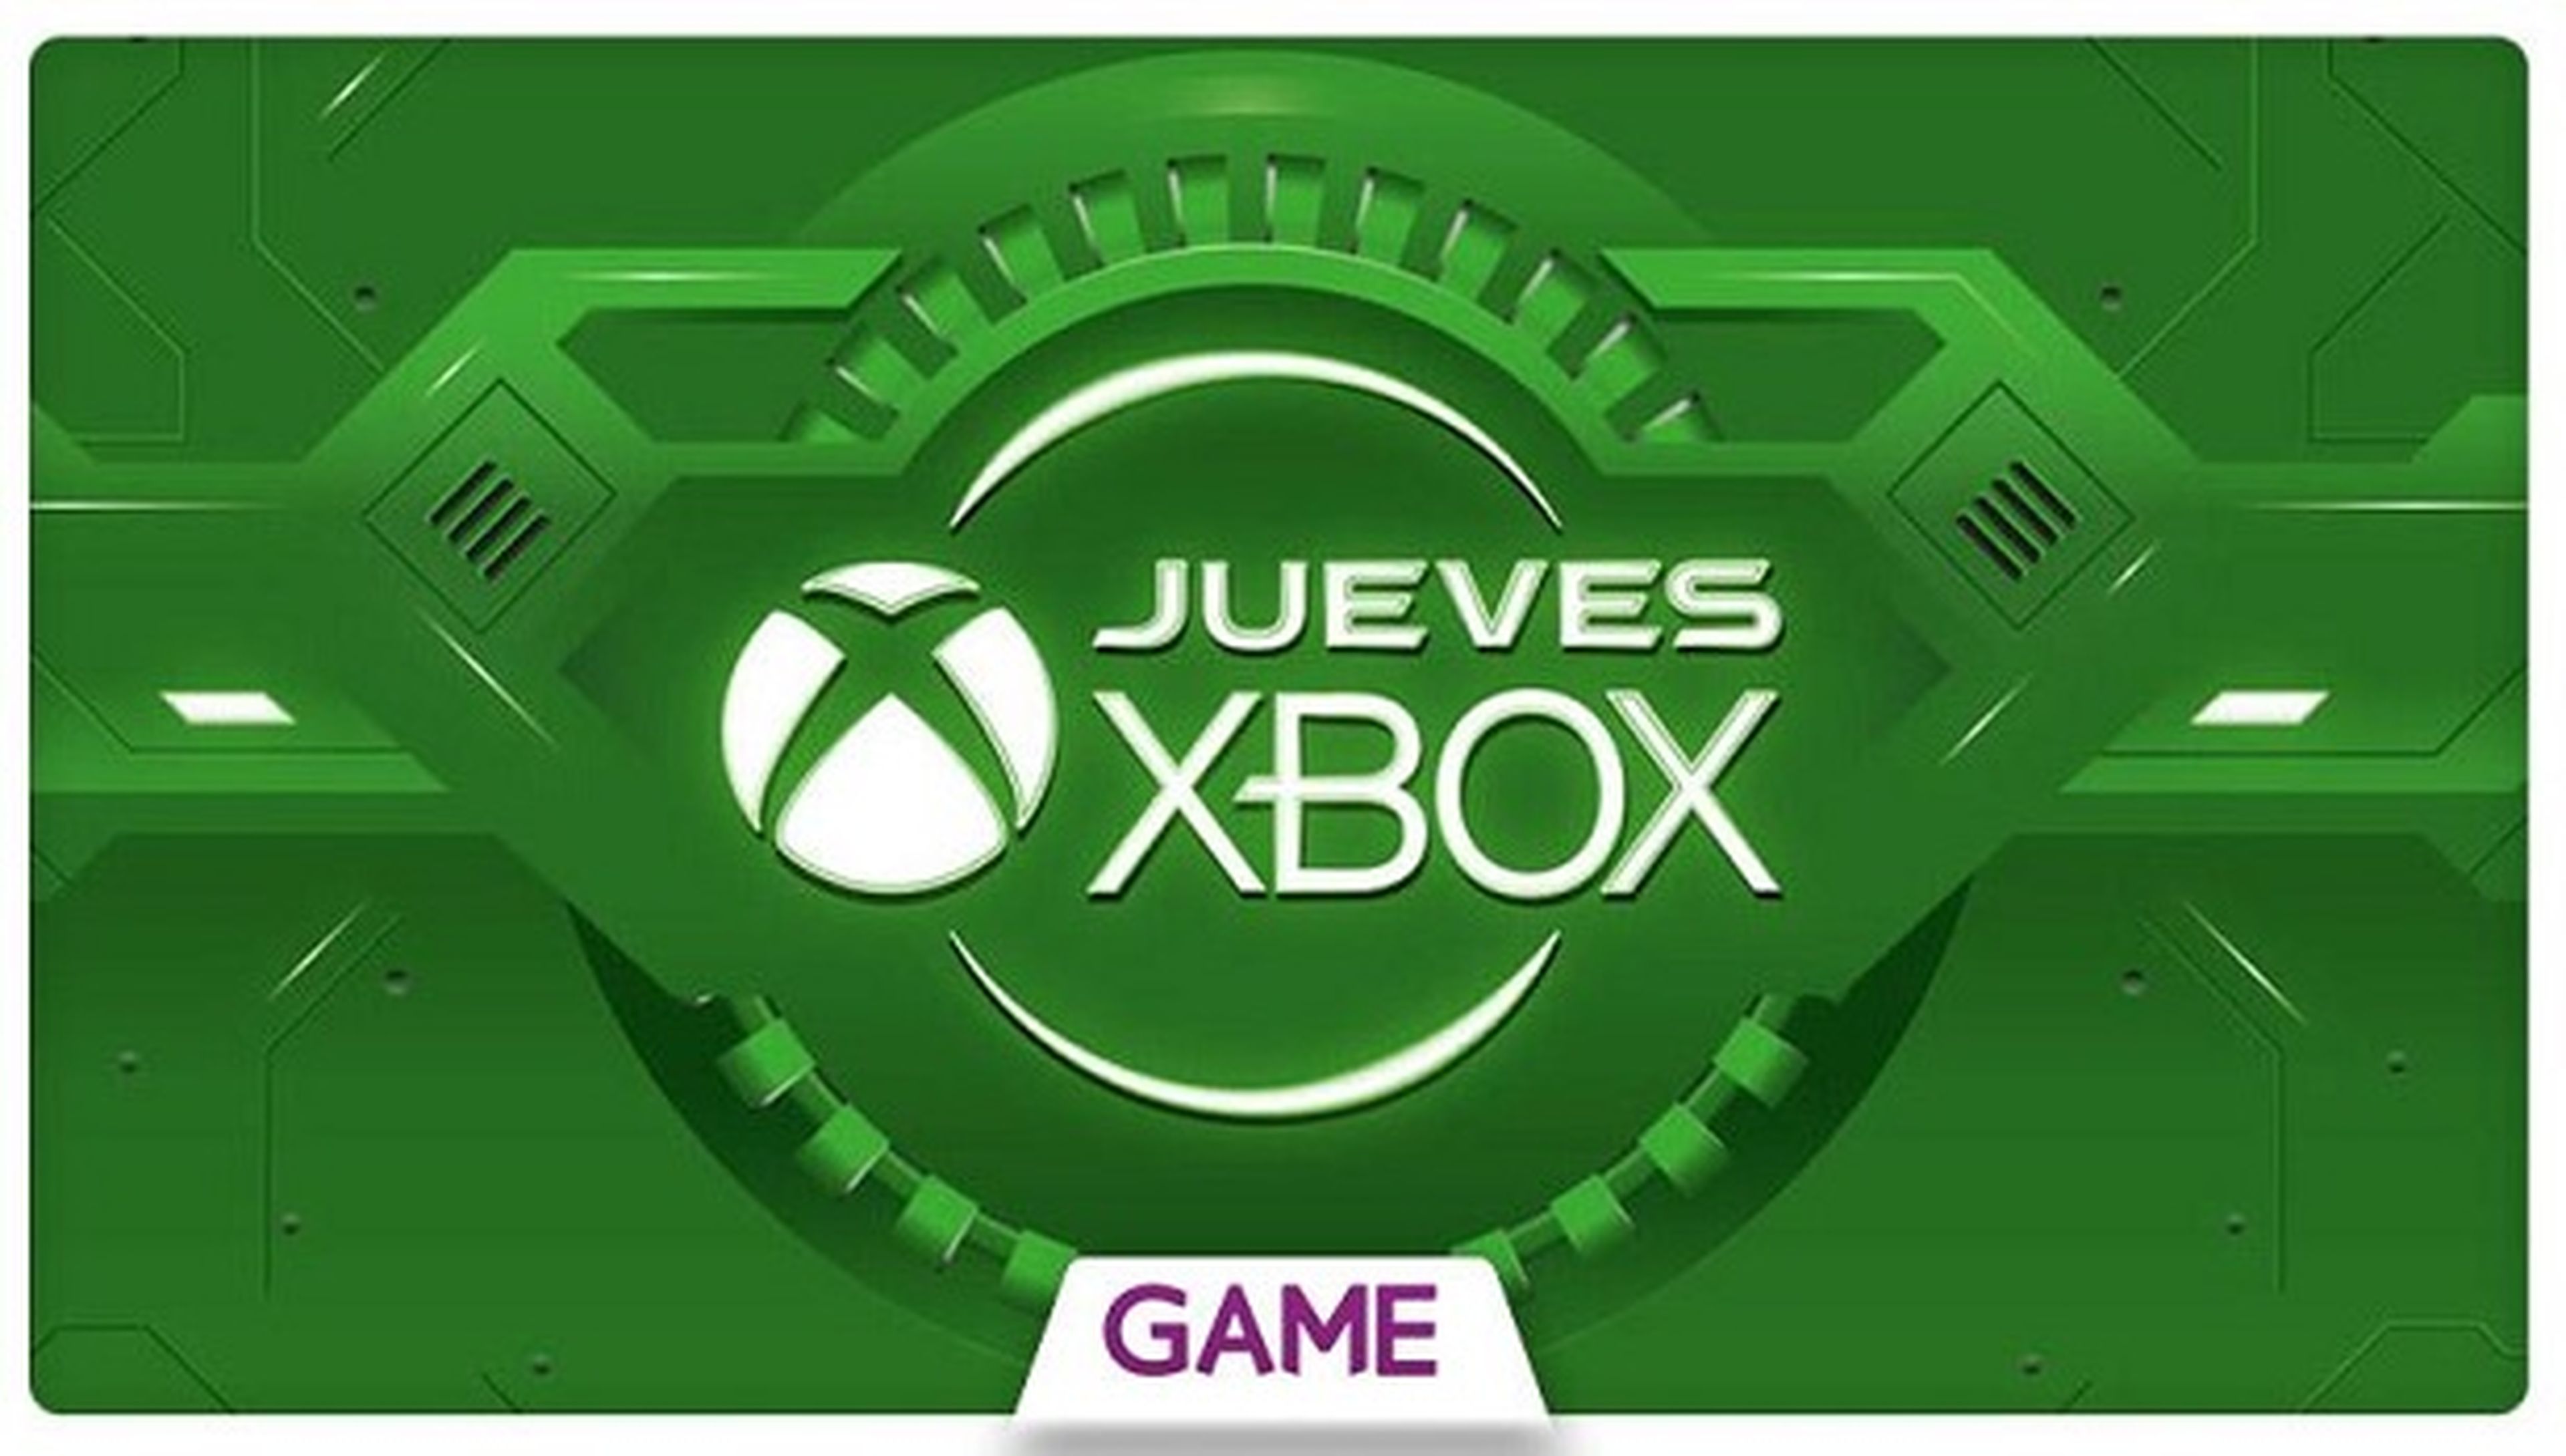 Jueves Xbox en GAME: cuarta semana de ofertas